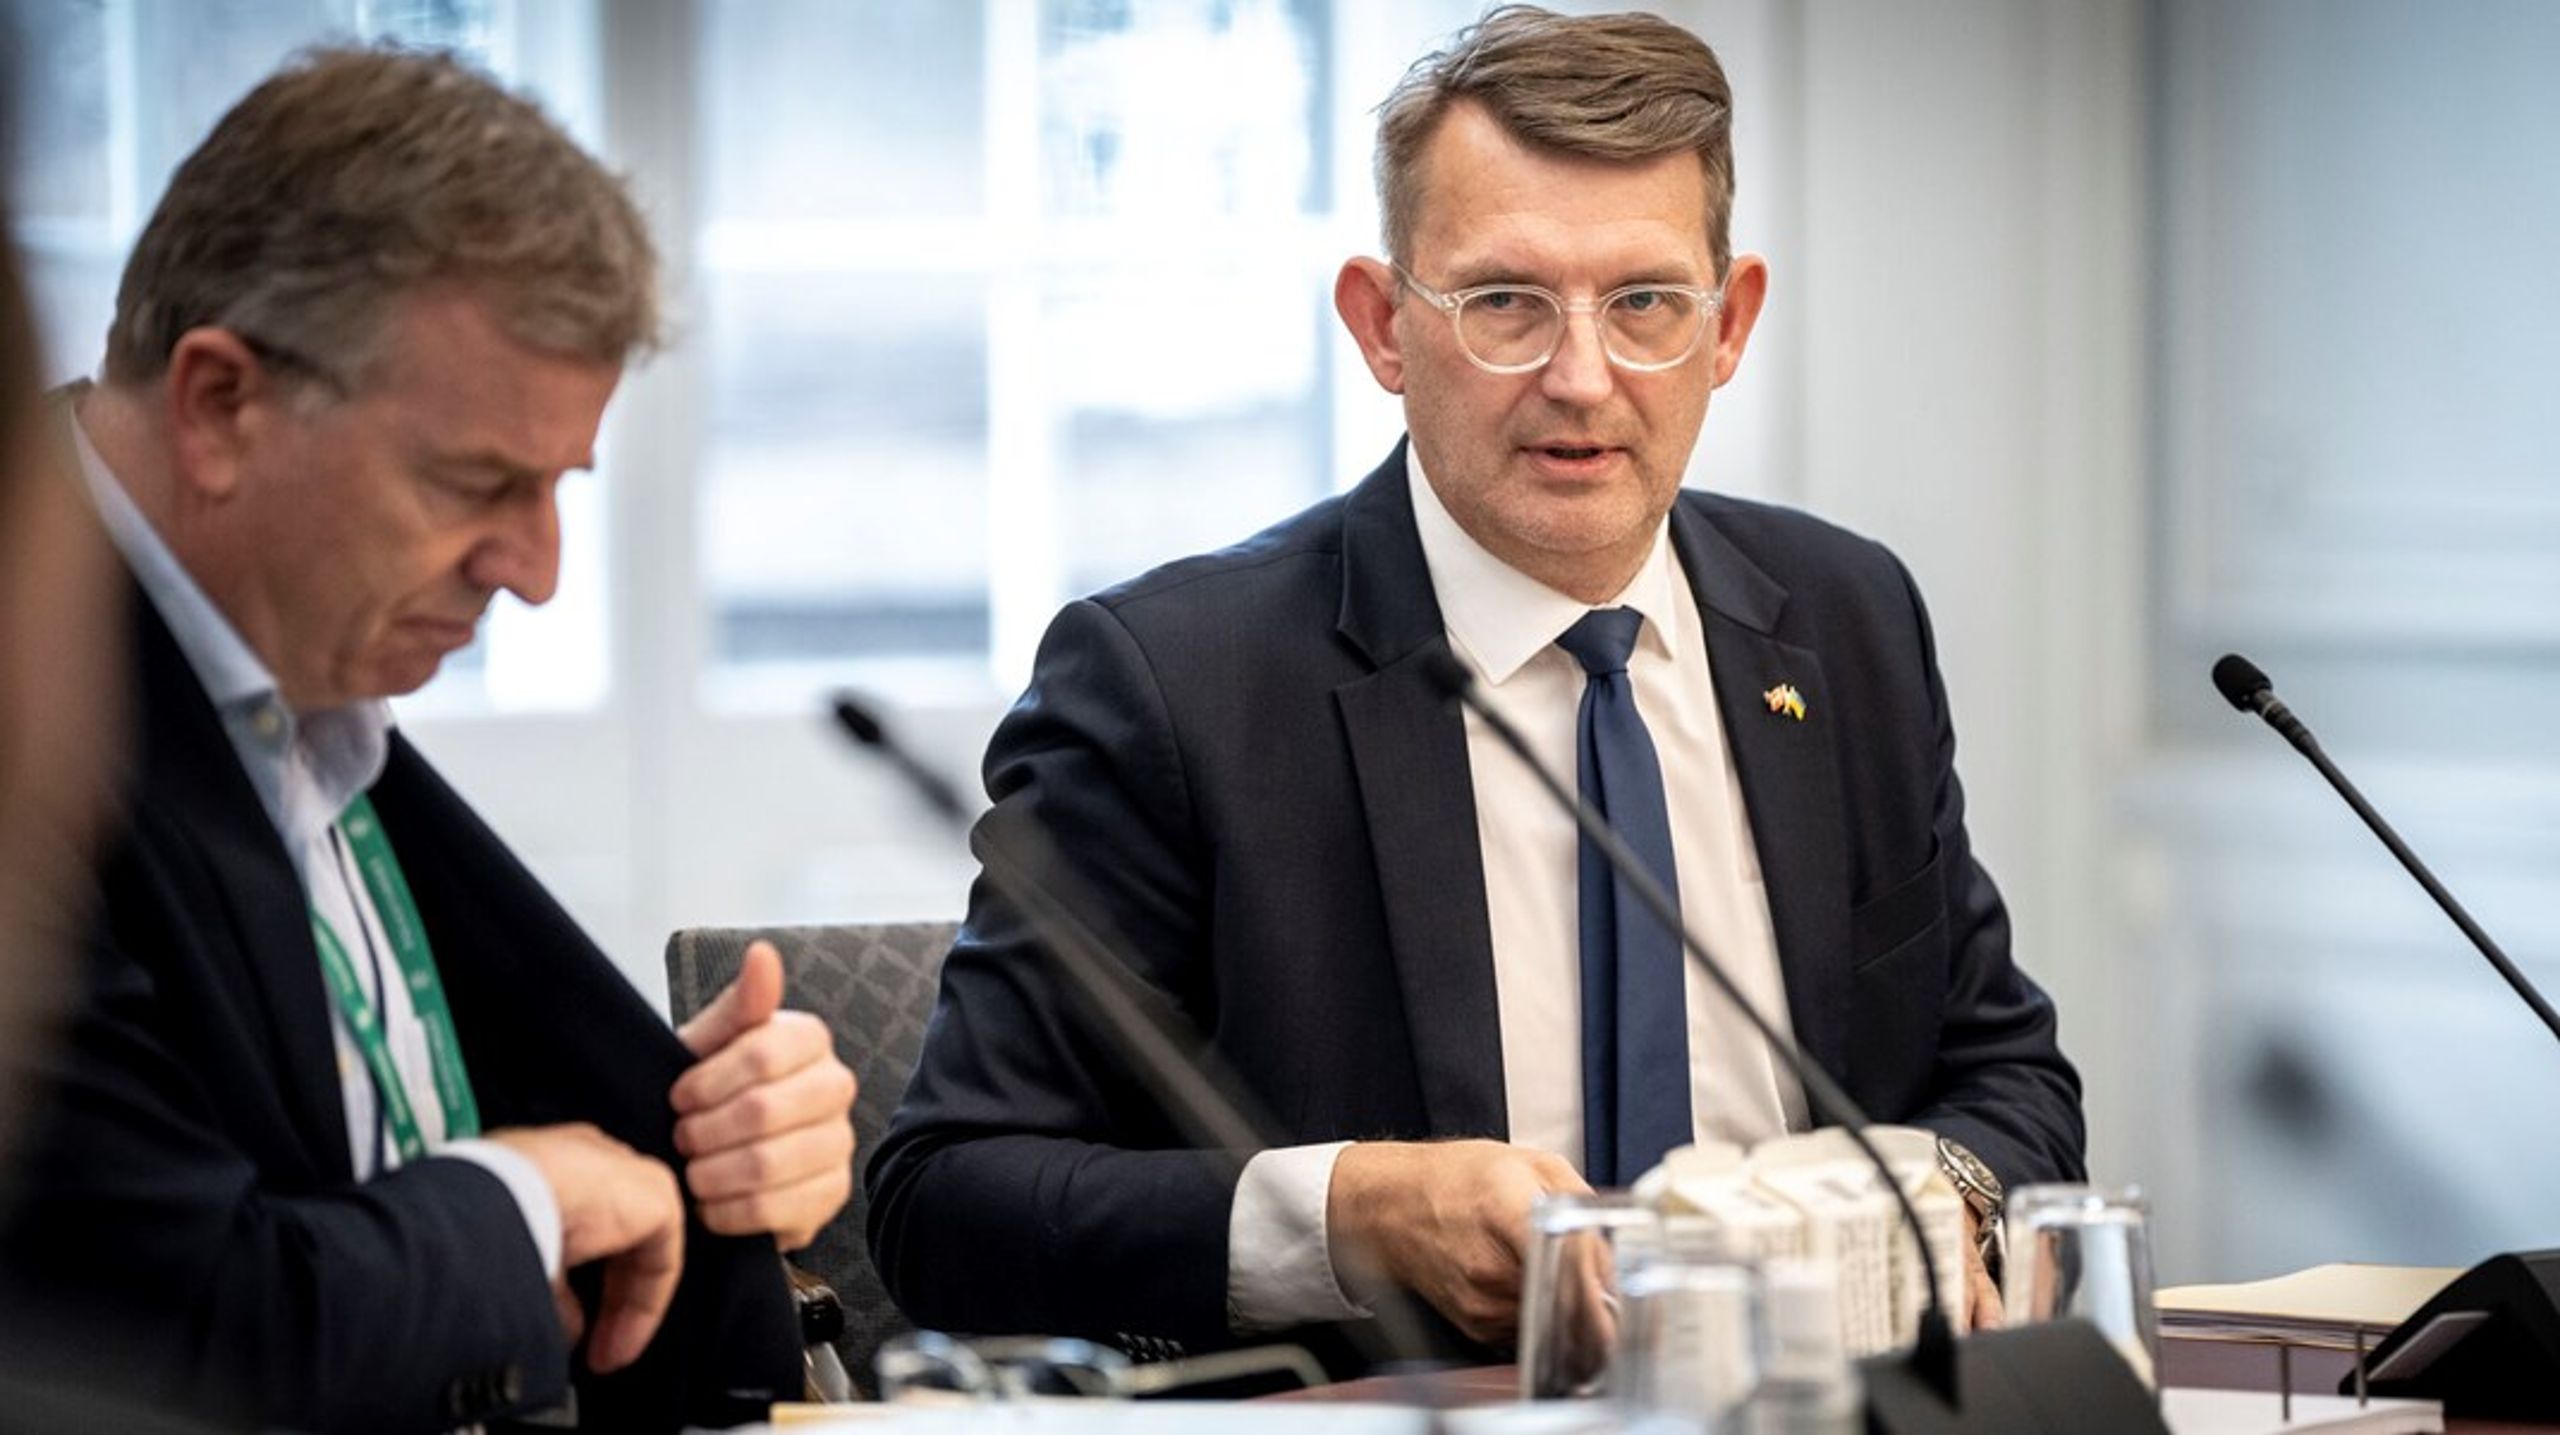 Forsvarsminister Troels Lund Poulsen var i november 2023 i samråd i Folketingets finansudvalget om Elbit-sagen, som blandt andet handler om urigtige oplysninger i to aktstykker om anskaffelse af raketkastere og artillerisystemer for 1,74 milliarder kroner.